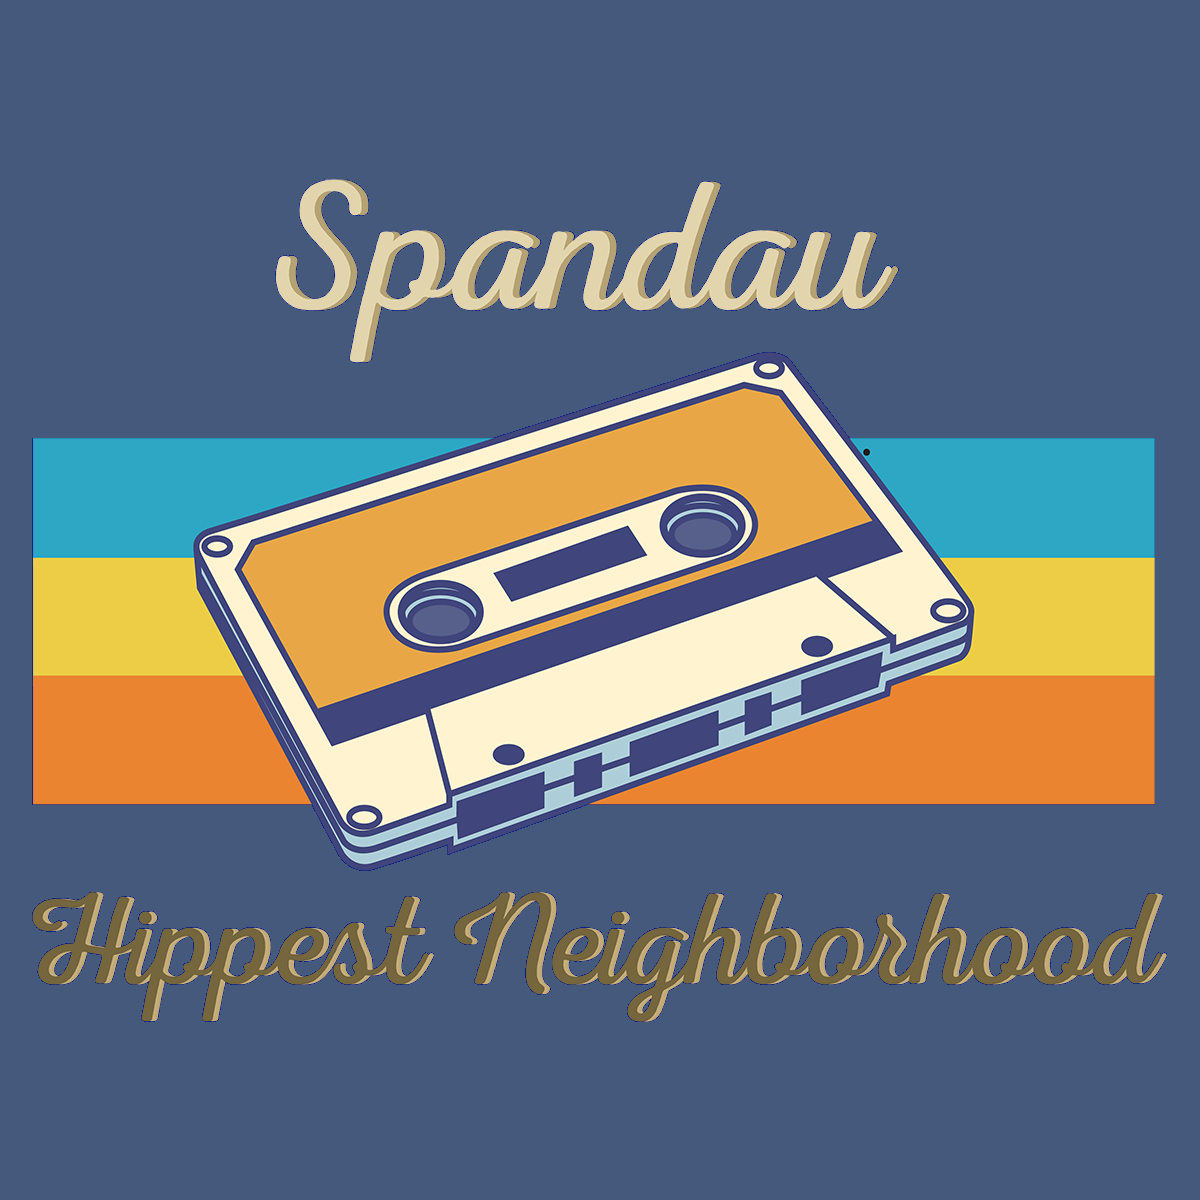 Spandau Hippest Neighborhood